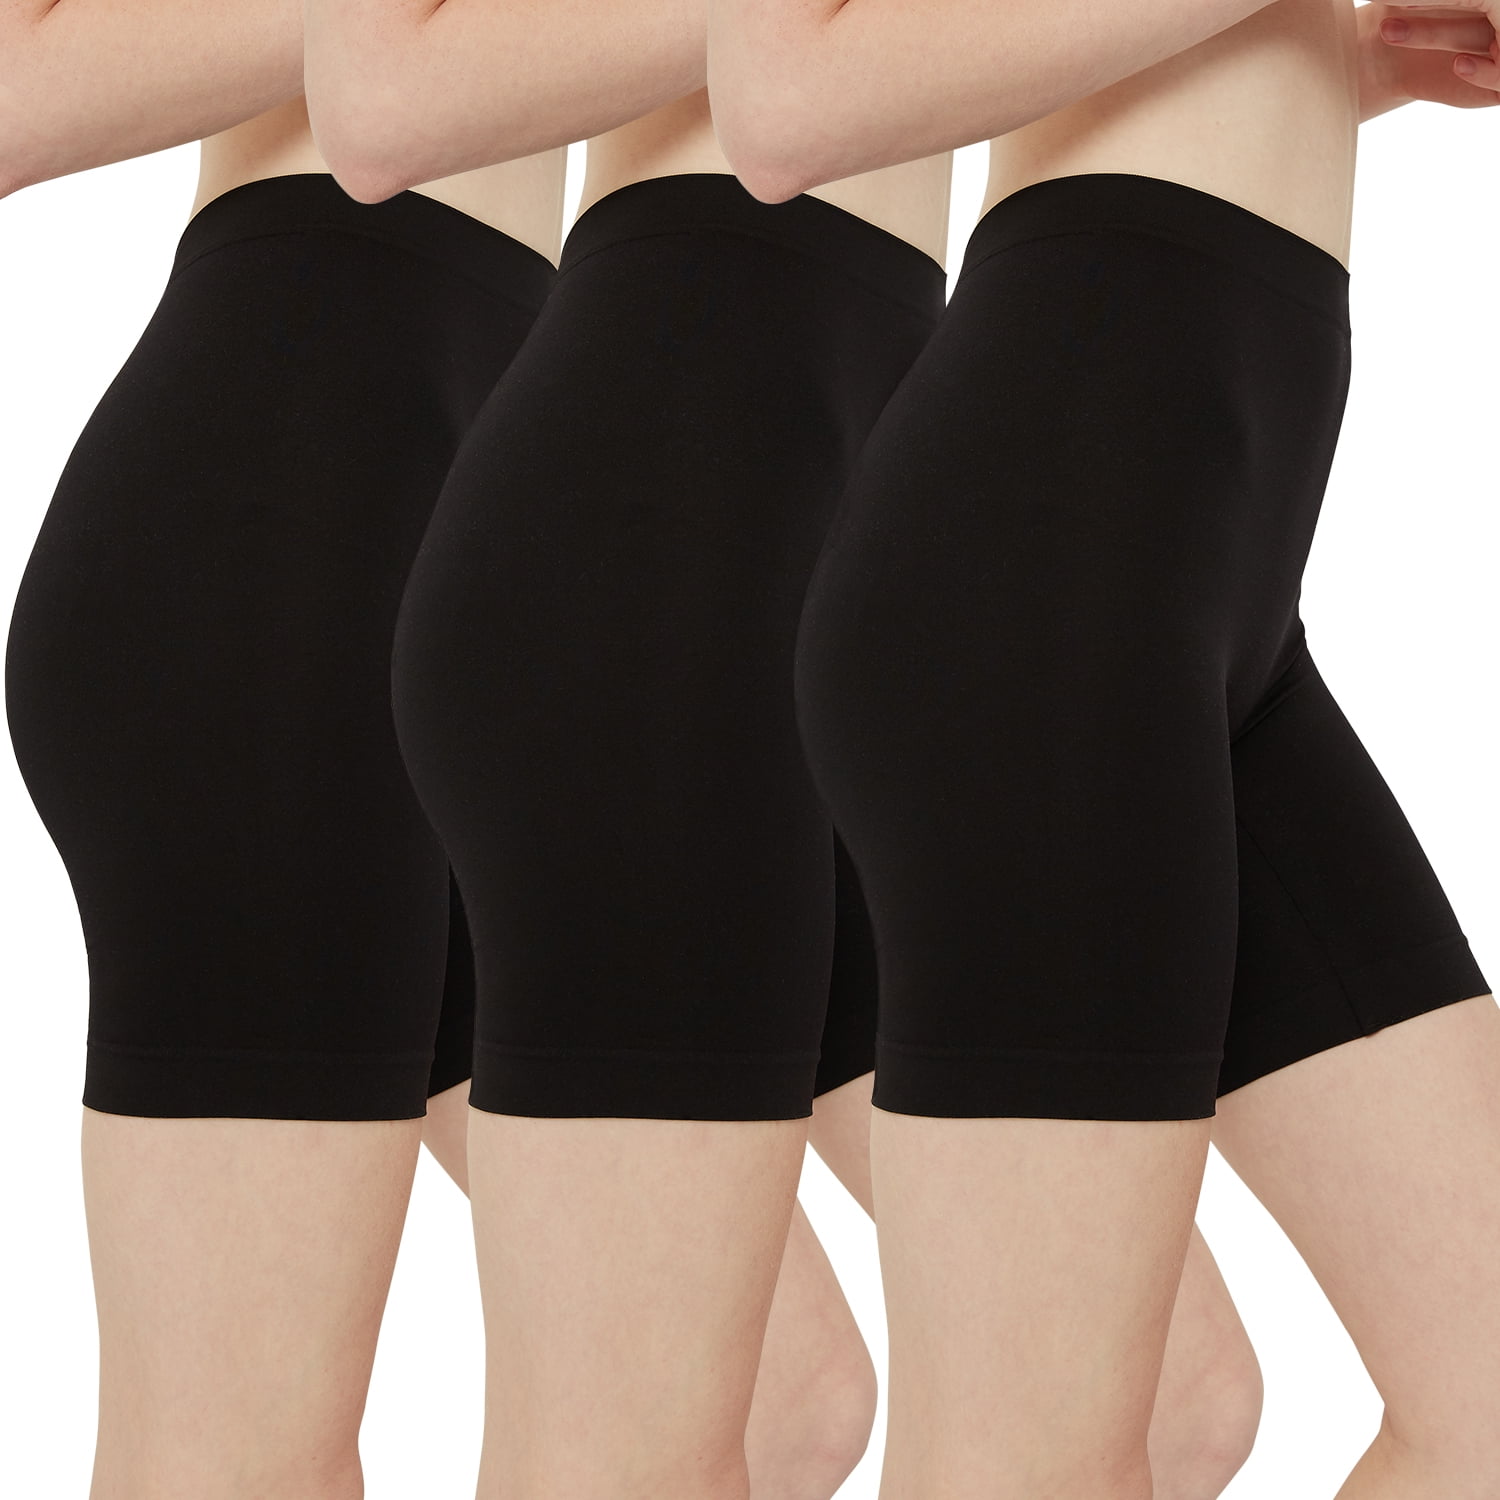 INNERSY Women's Black Slip Shorts for Under Dresses High Waisted Summer  Shorts 3 Pack (2XL, Black) 